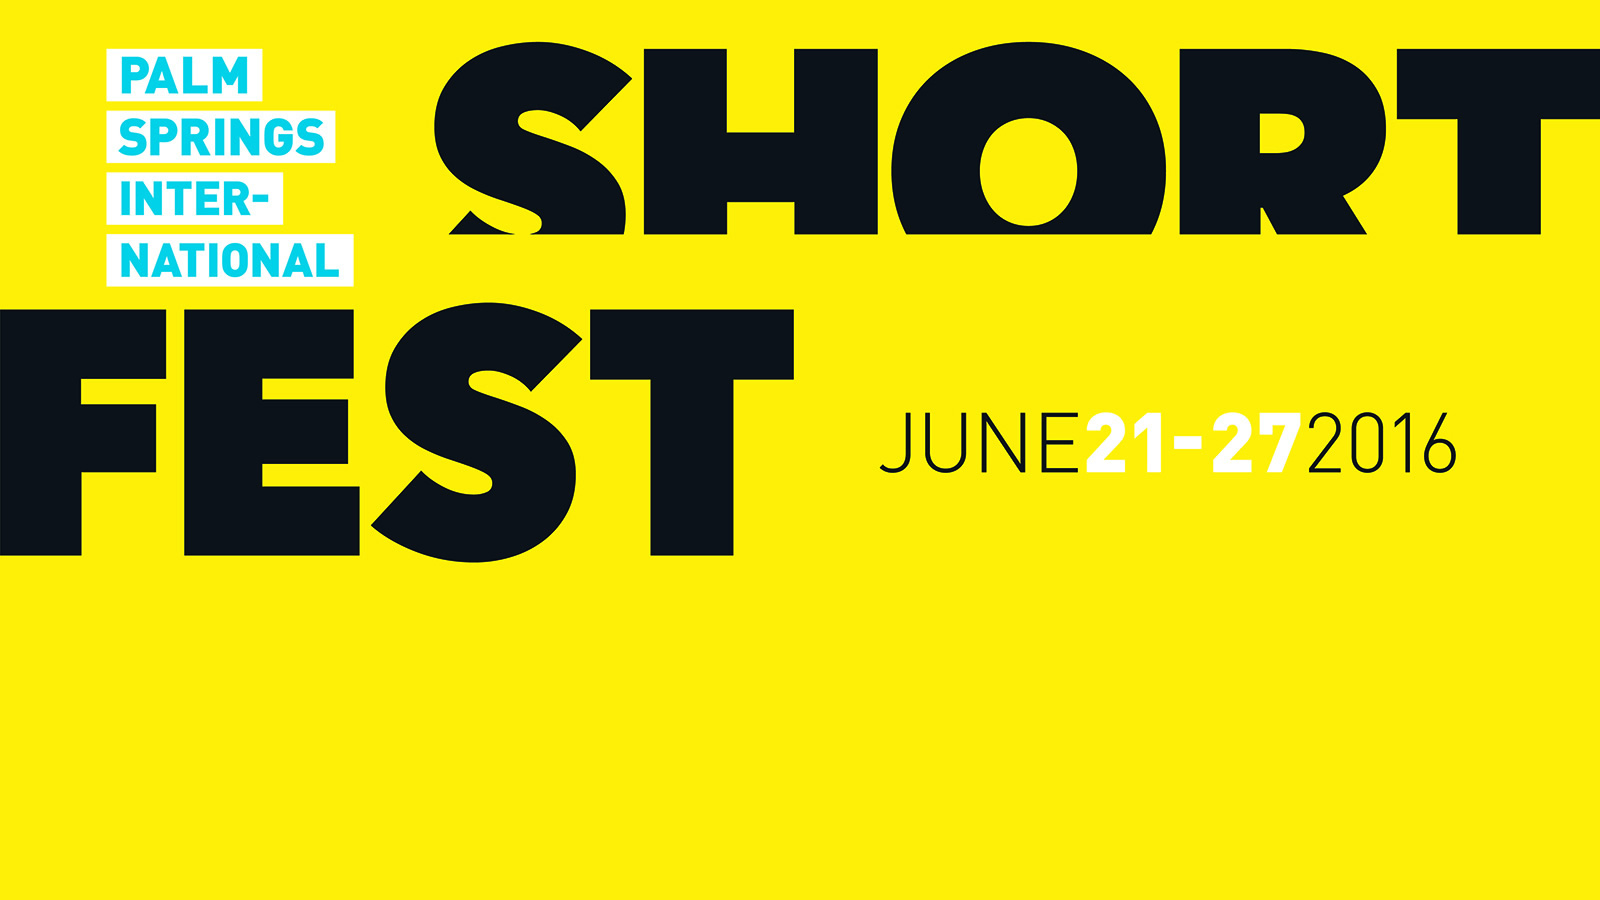 2016 Shortfest Palm Springs International Film Festival